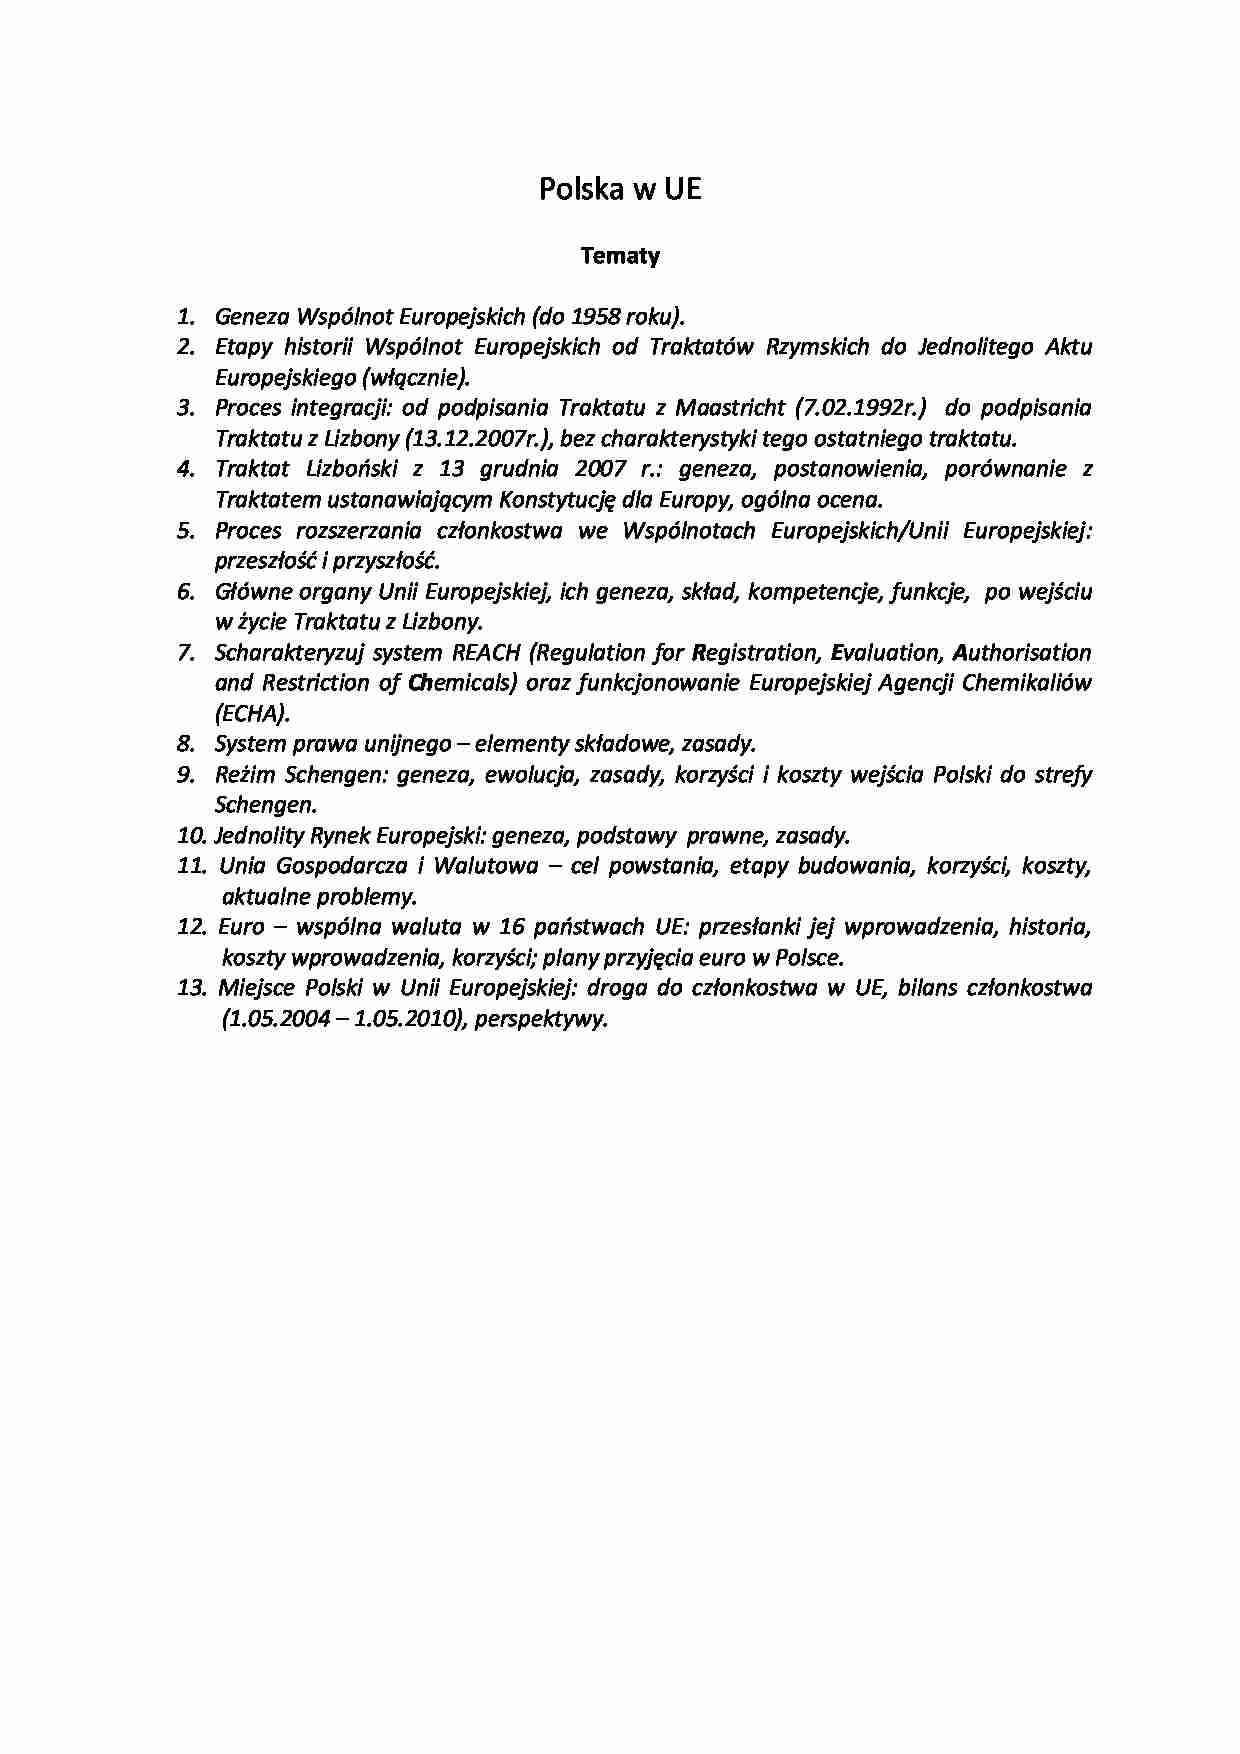 Tematy - Wydział Chemiczny - Polska w UE - strona 1